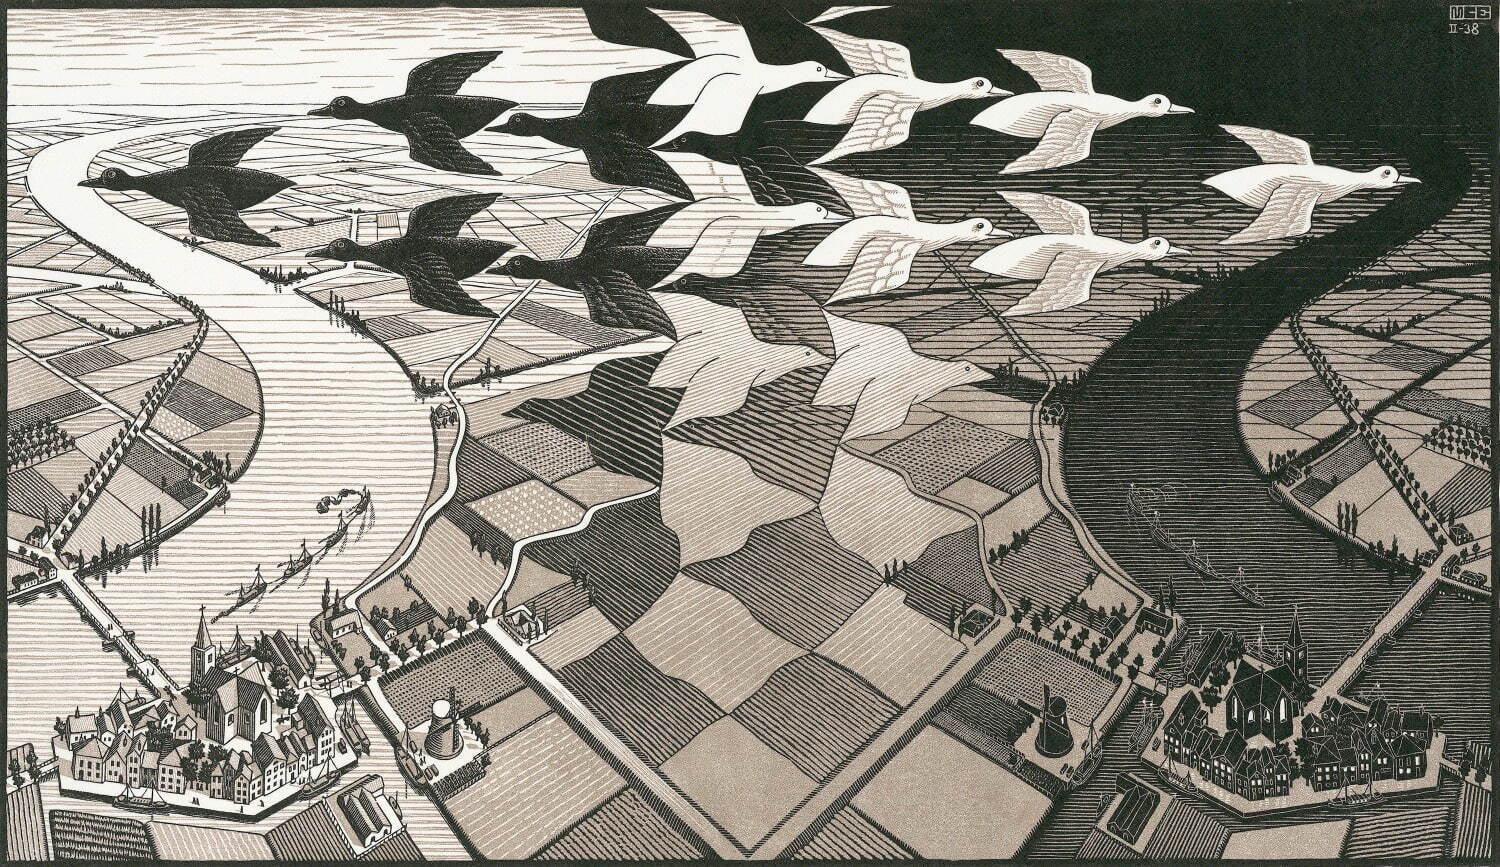 マウリッツ・コルネリス・エッシャー 《昼と夜》 1938年制作 木版
Maurits Collection, Italy
All M.C.Escher works © 2024 The M.C.Escher Company, Baarn, The Netherlands. All rights reserved
mcescher.com